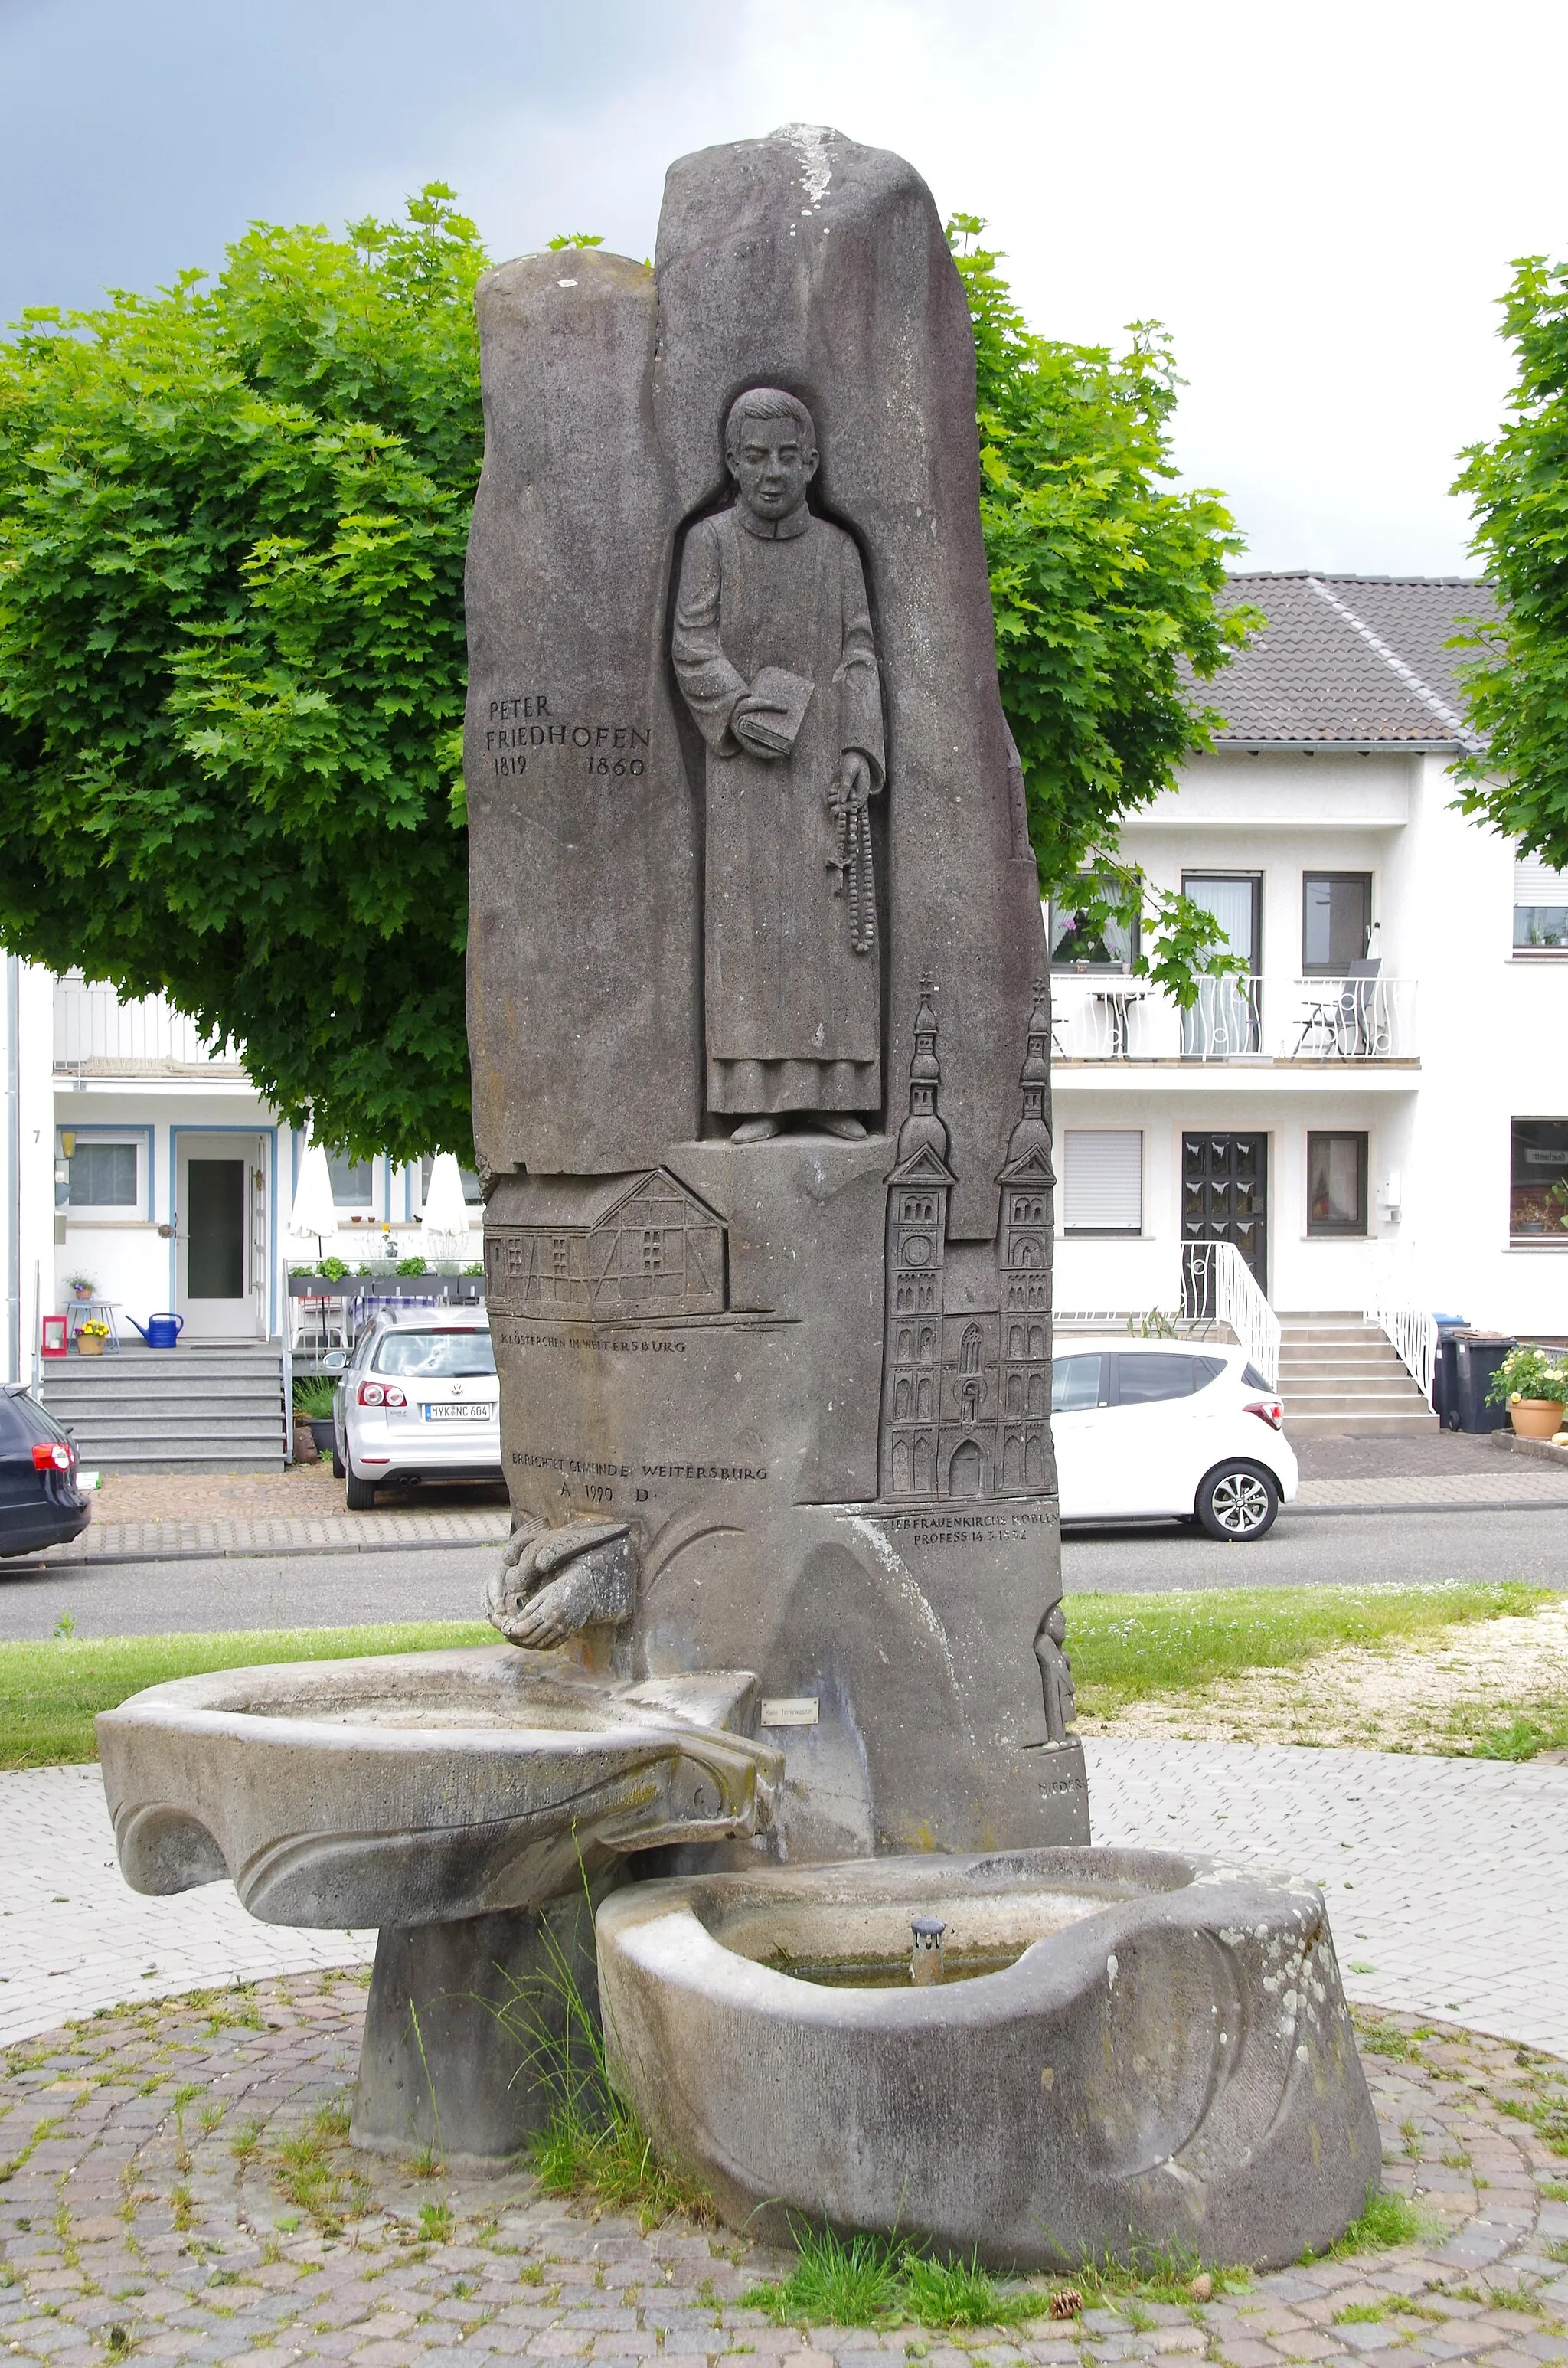 Image of Koblenz